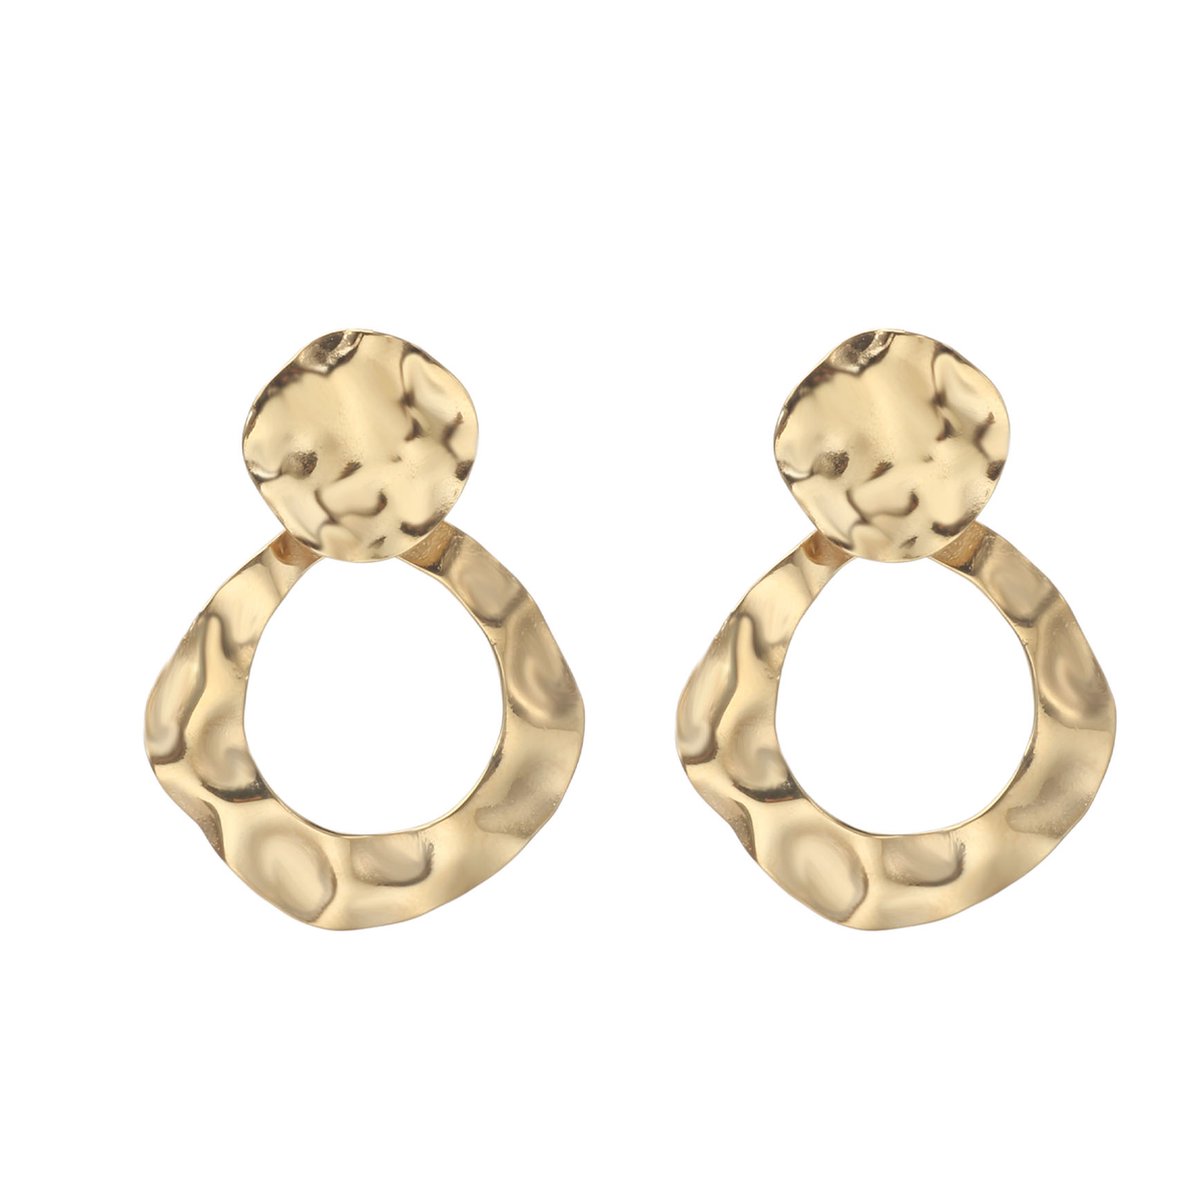 The Jewellery Club - Double heart earrings gold - Oorbellen - Dames oorbellen - Statement oorbellen - Stainless steel - Goud - 3,2 cm